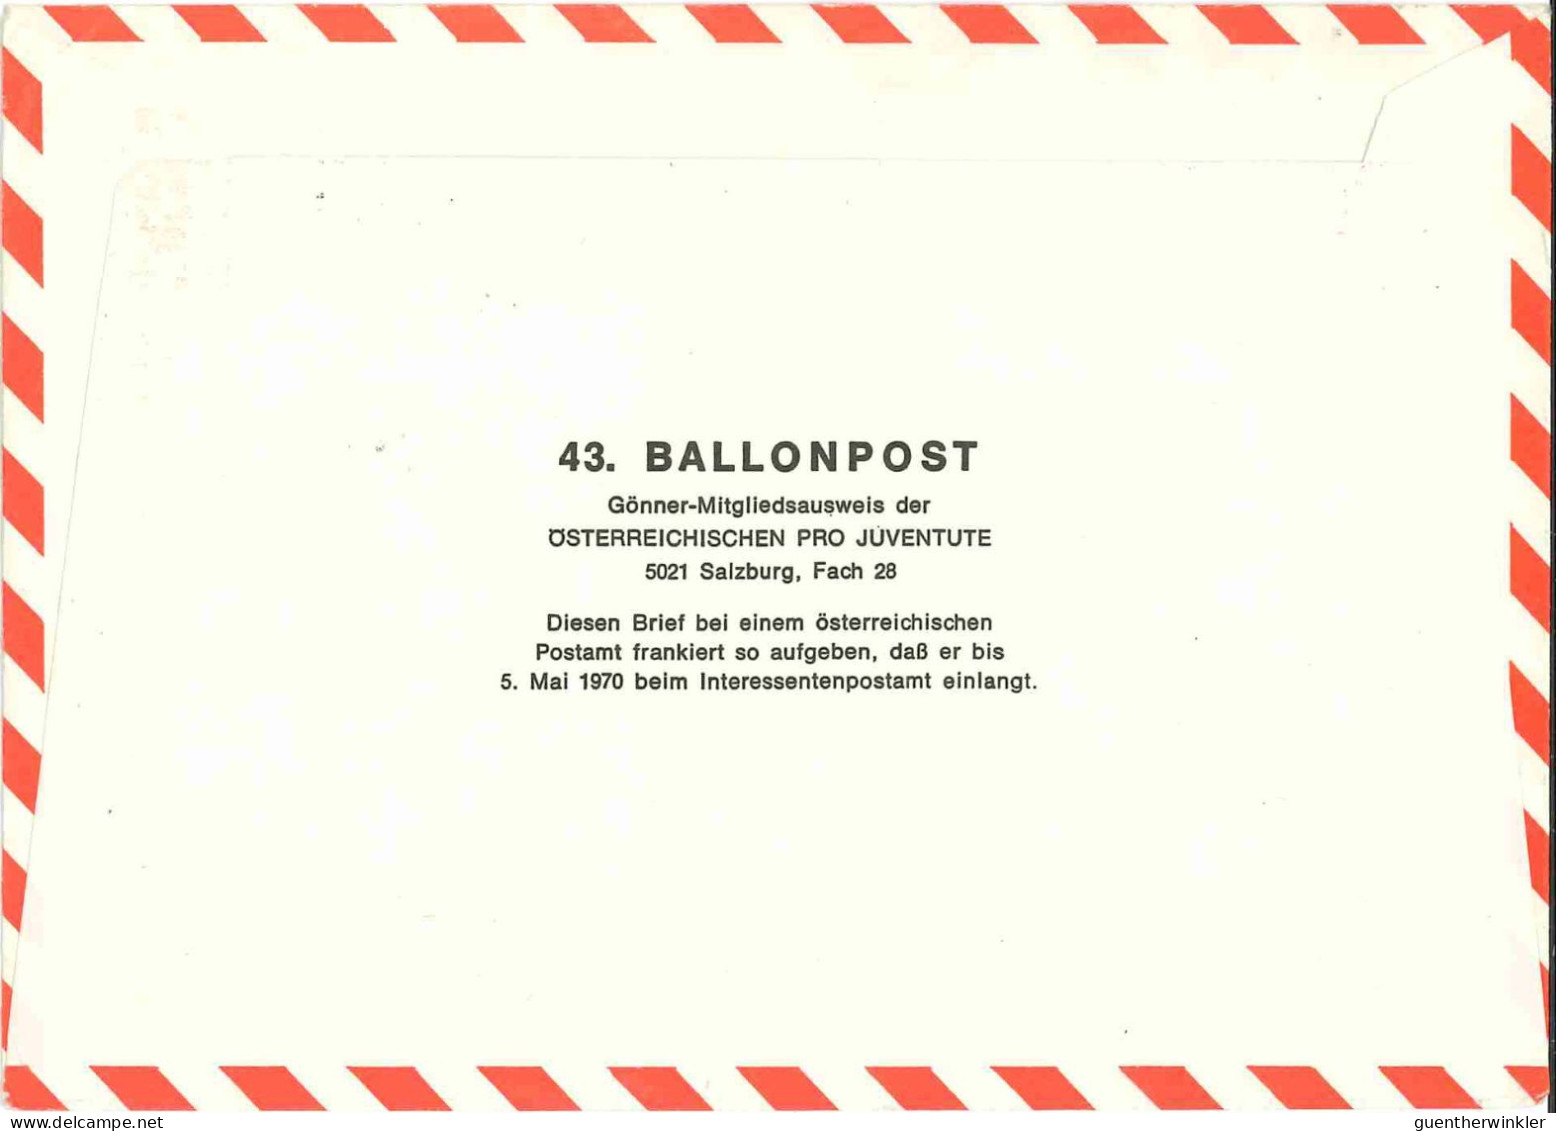 Regulärer Ballonpostflug Nr. 43a Der Pro Juventute [RBP43.] - Ballons